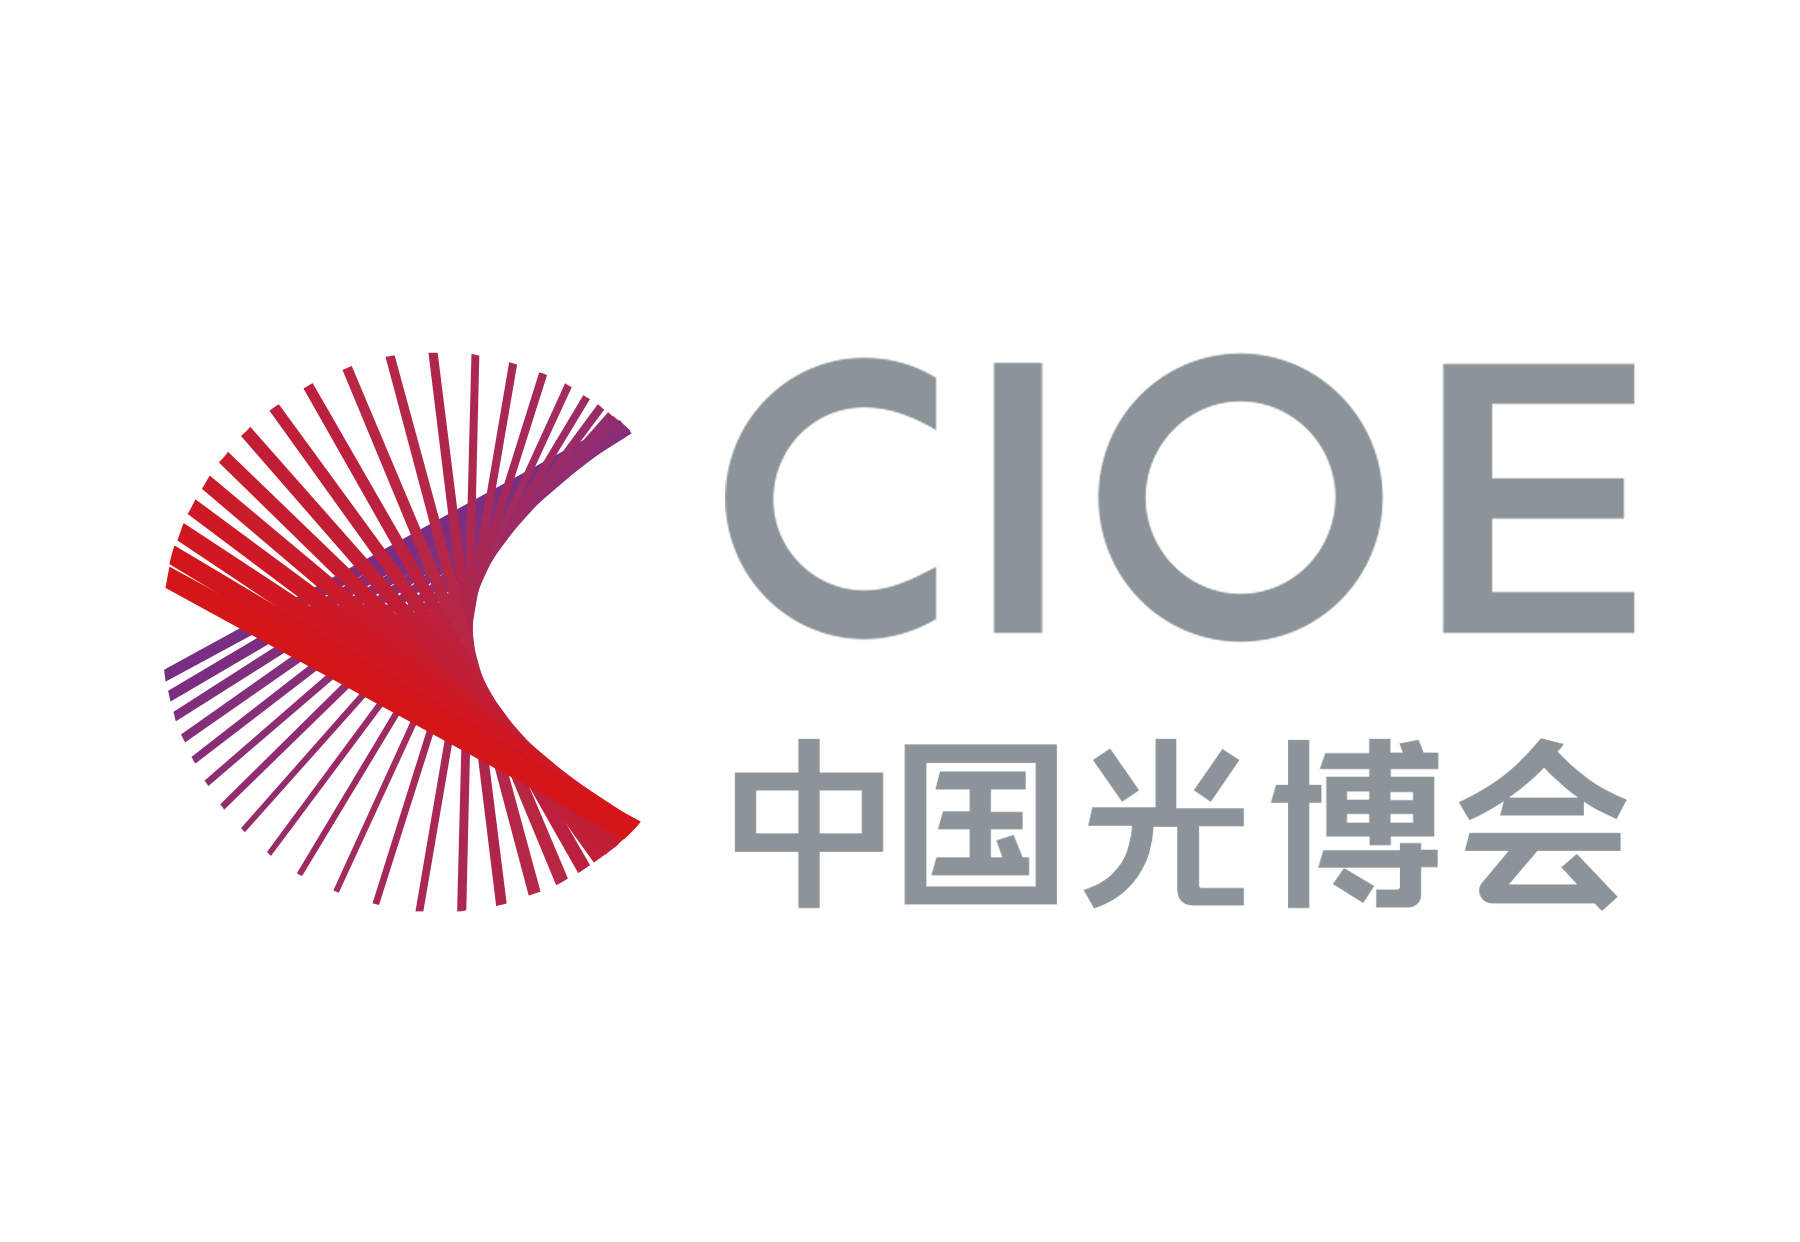 【延期】第24届中国国际光学博览会CIOE2022